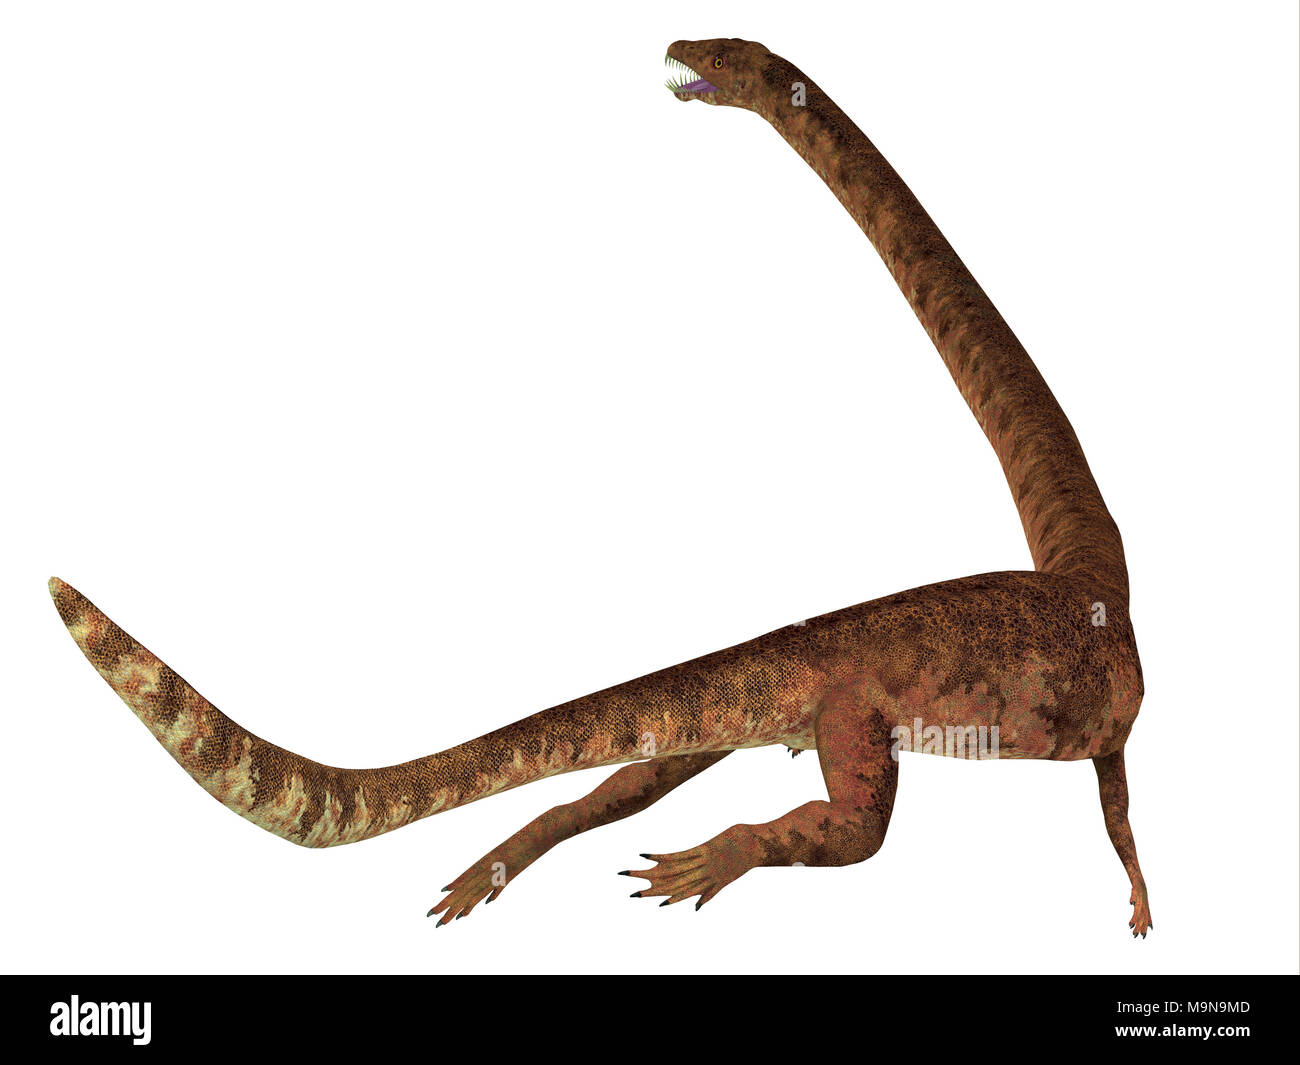 Dinosauro Tanystropheus Coda - Tanystropheus era un predatore marino rettile che visse nel Triassico mari d'Europa e il Medio Oriente. Foto Stock